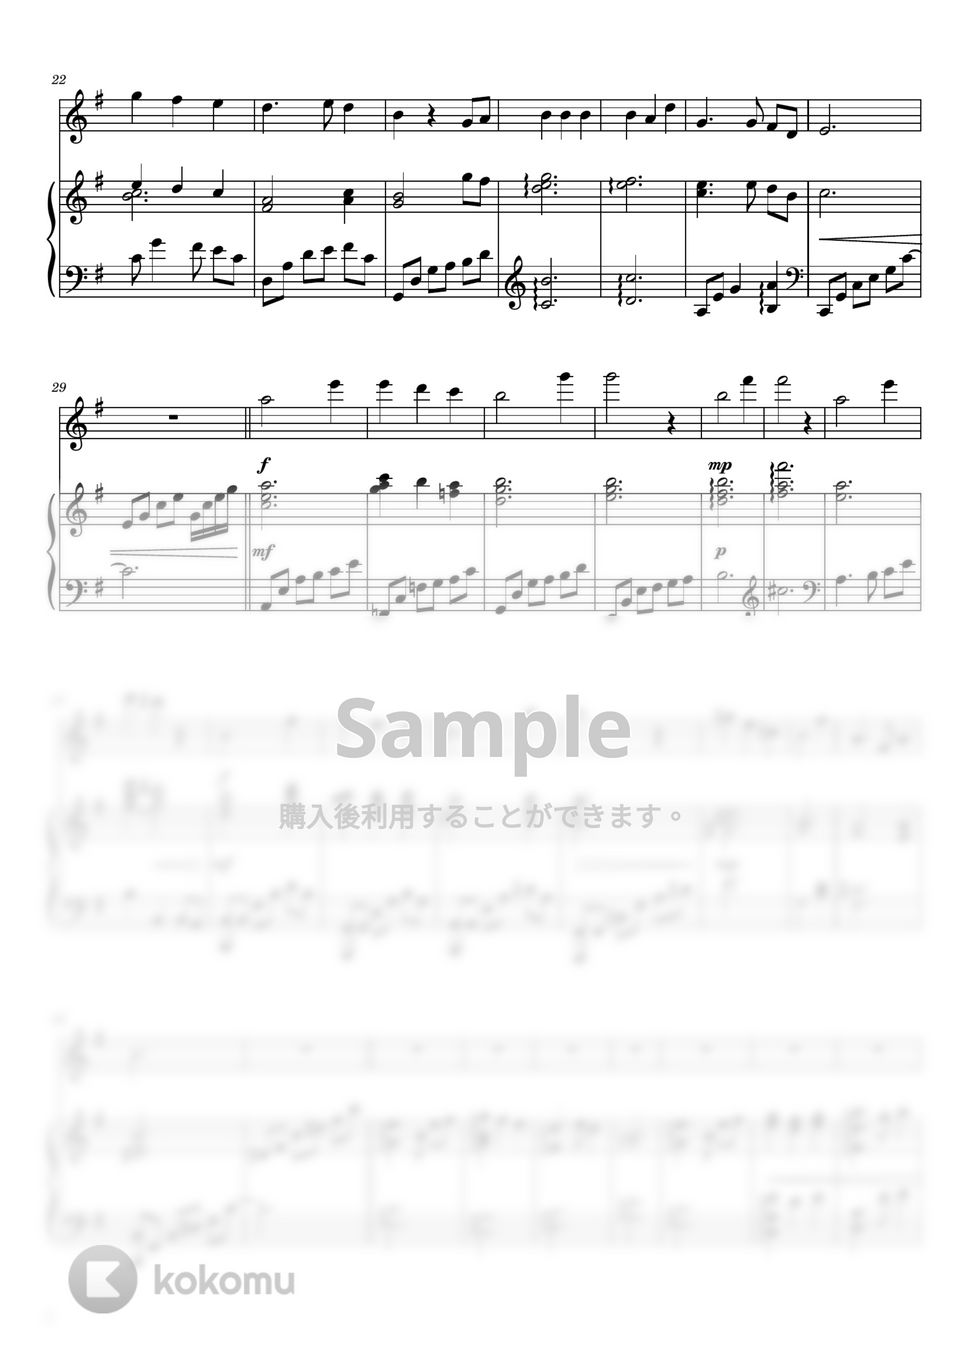 ファイナルファンタジーX - ザナルカンドにて (フルート&ピアノ伴奏) by PiaFlu